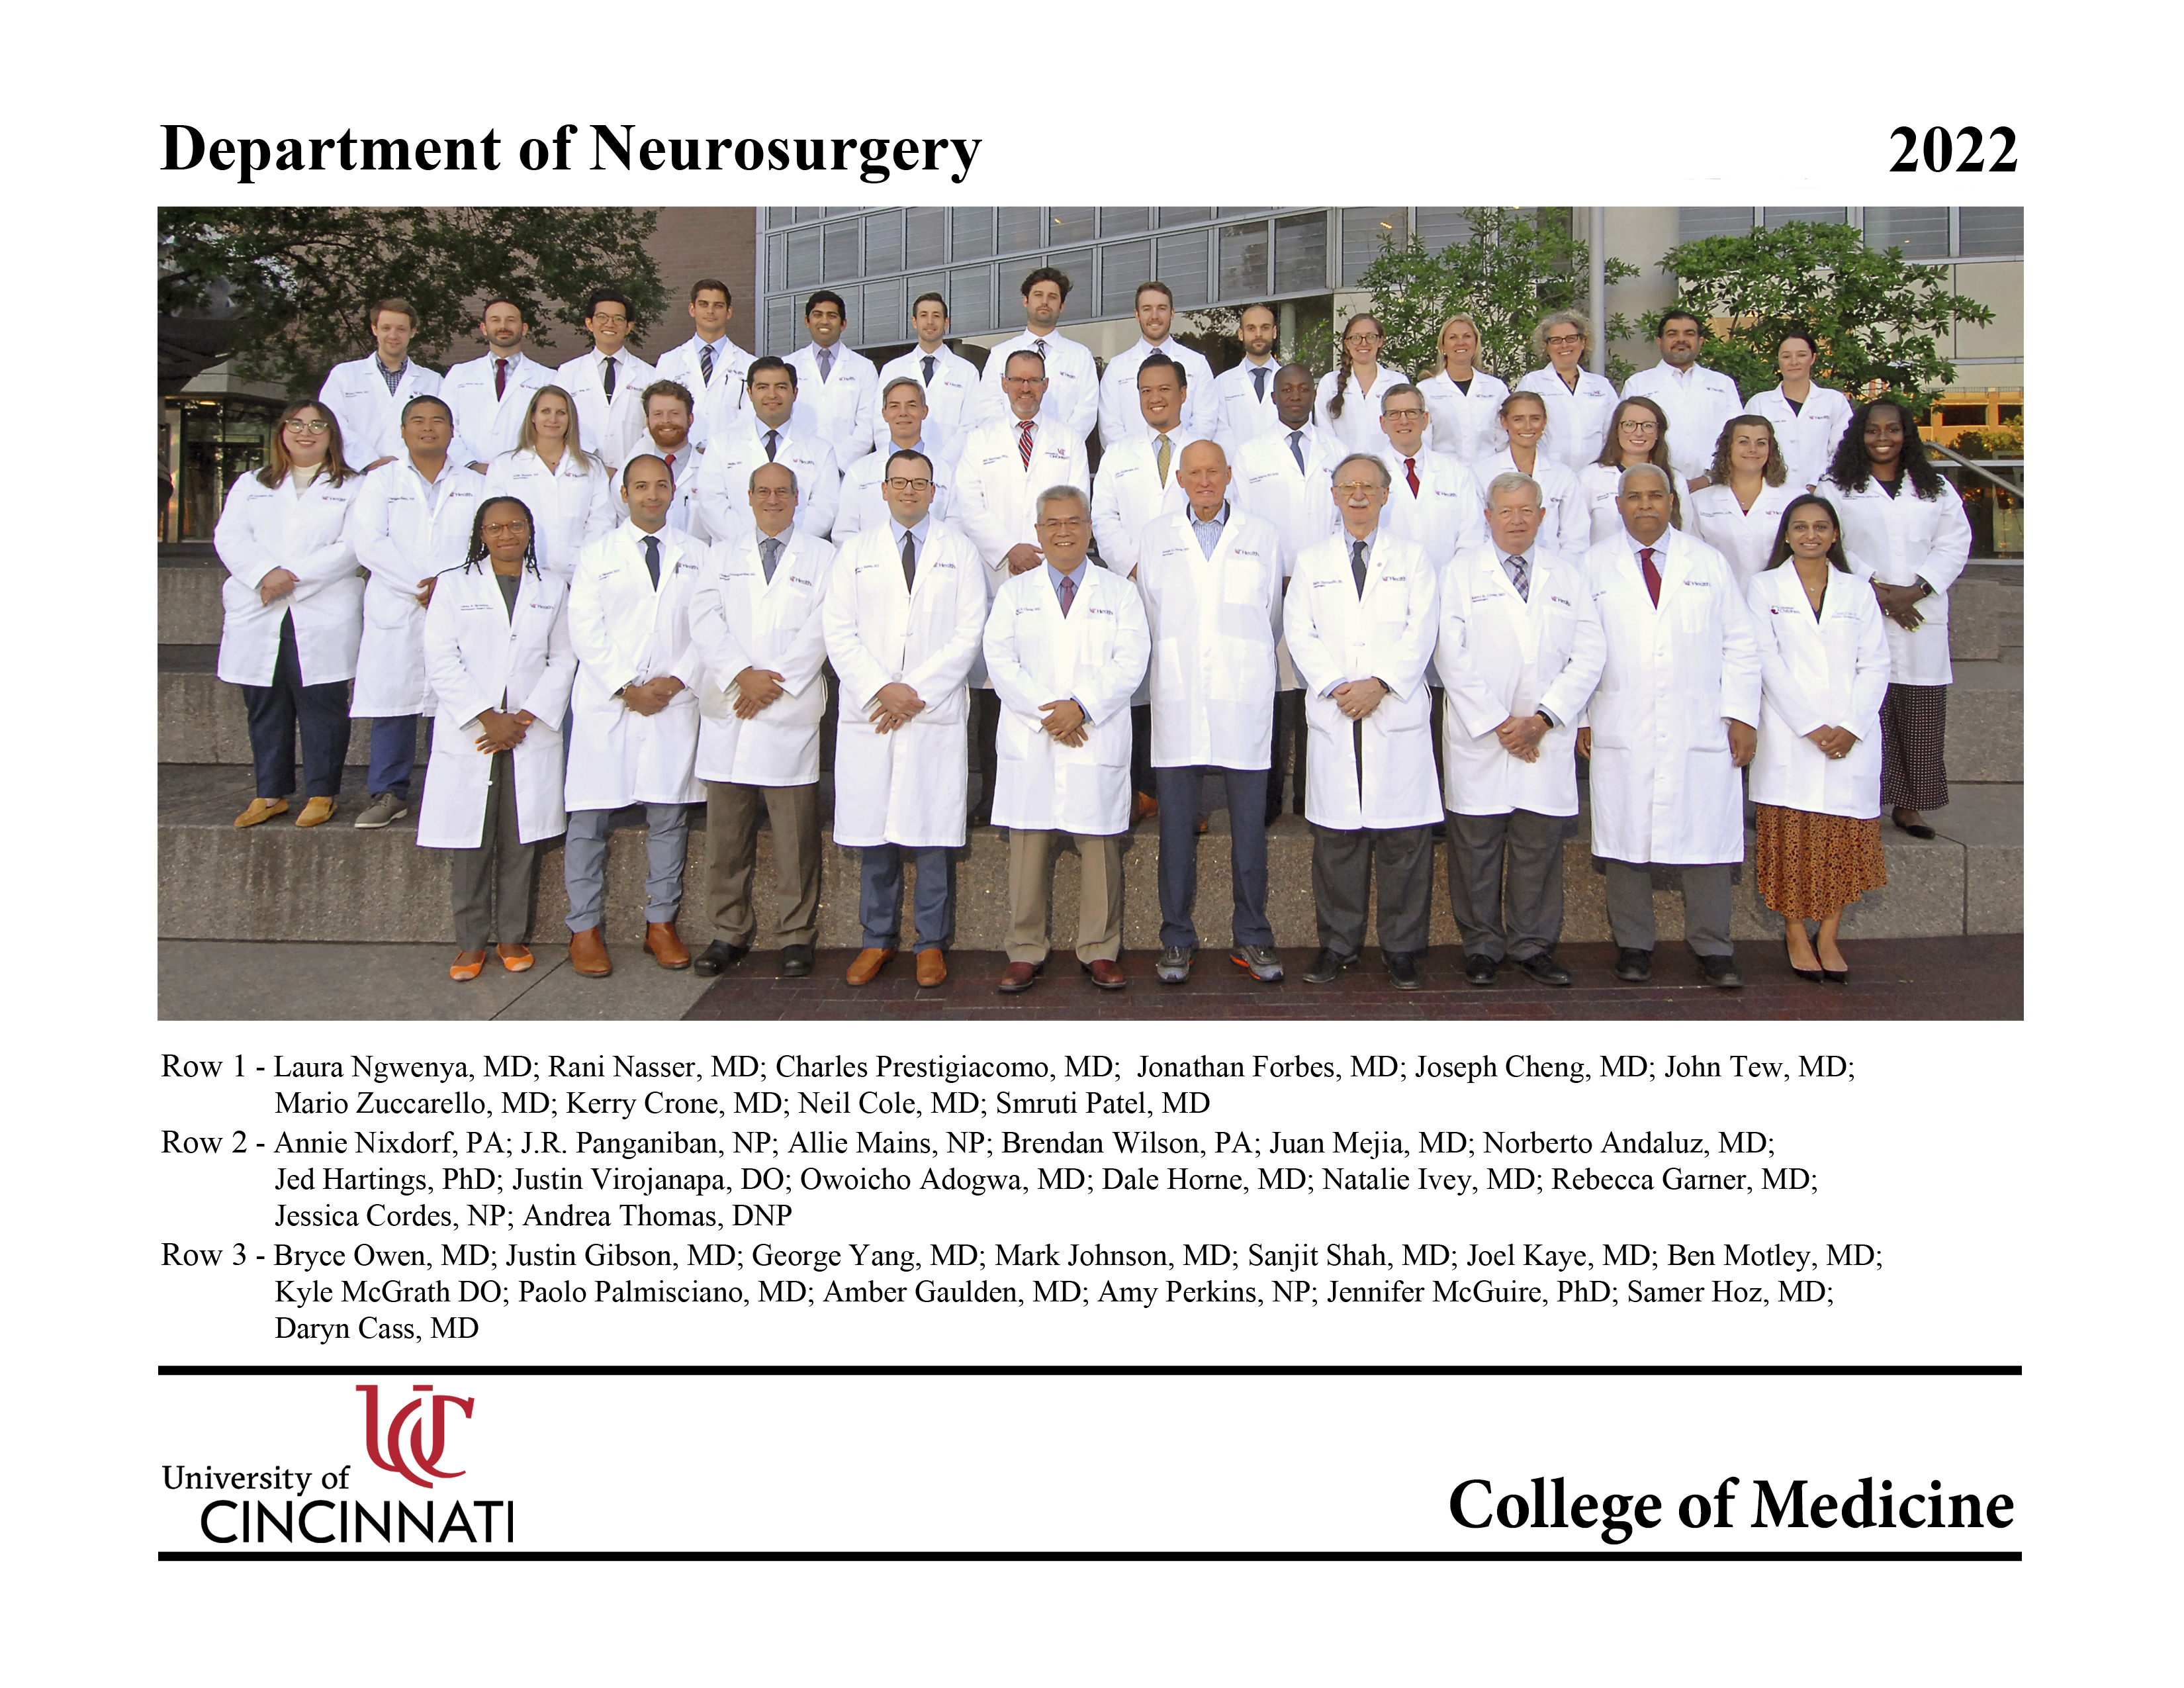 2022 Neurosurgery Dept Group